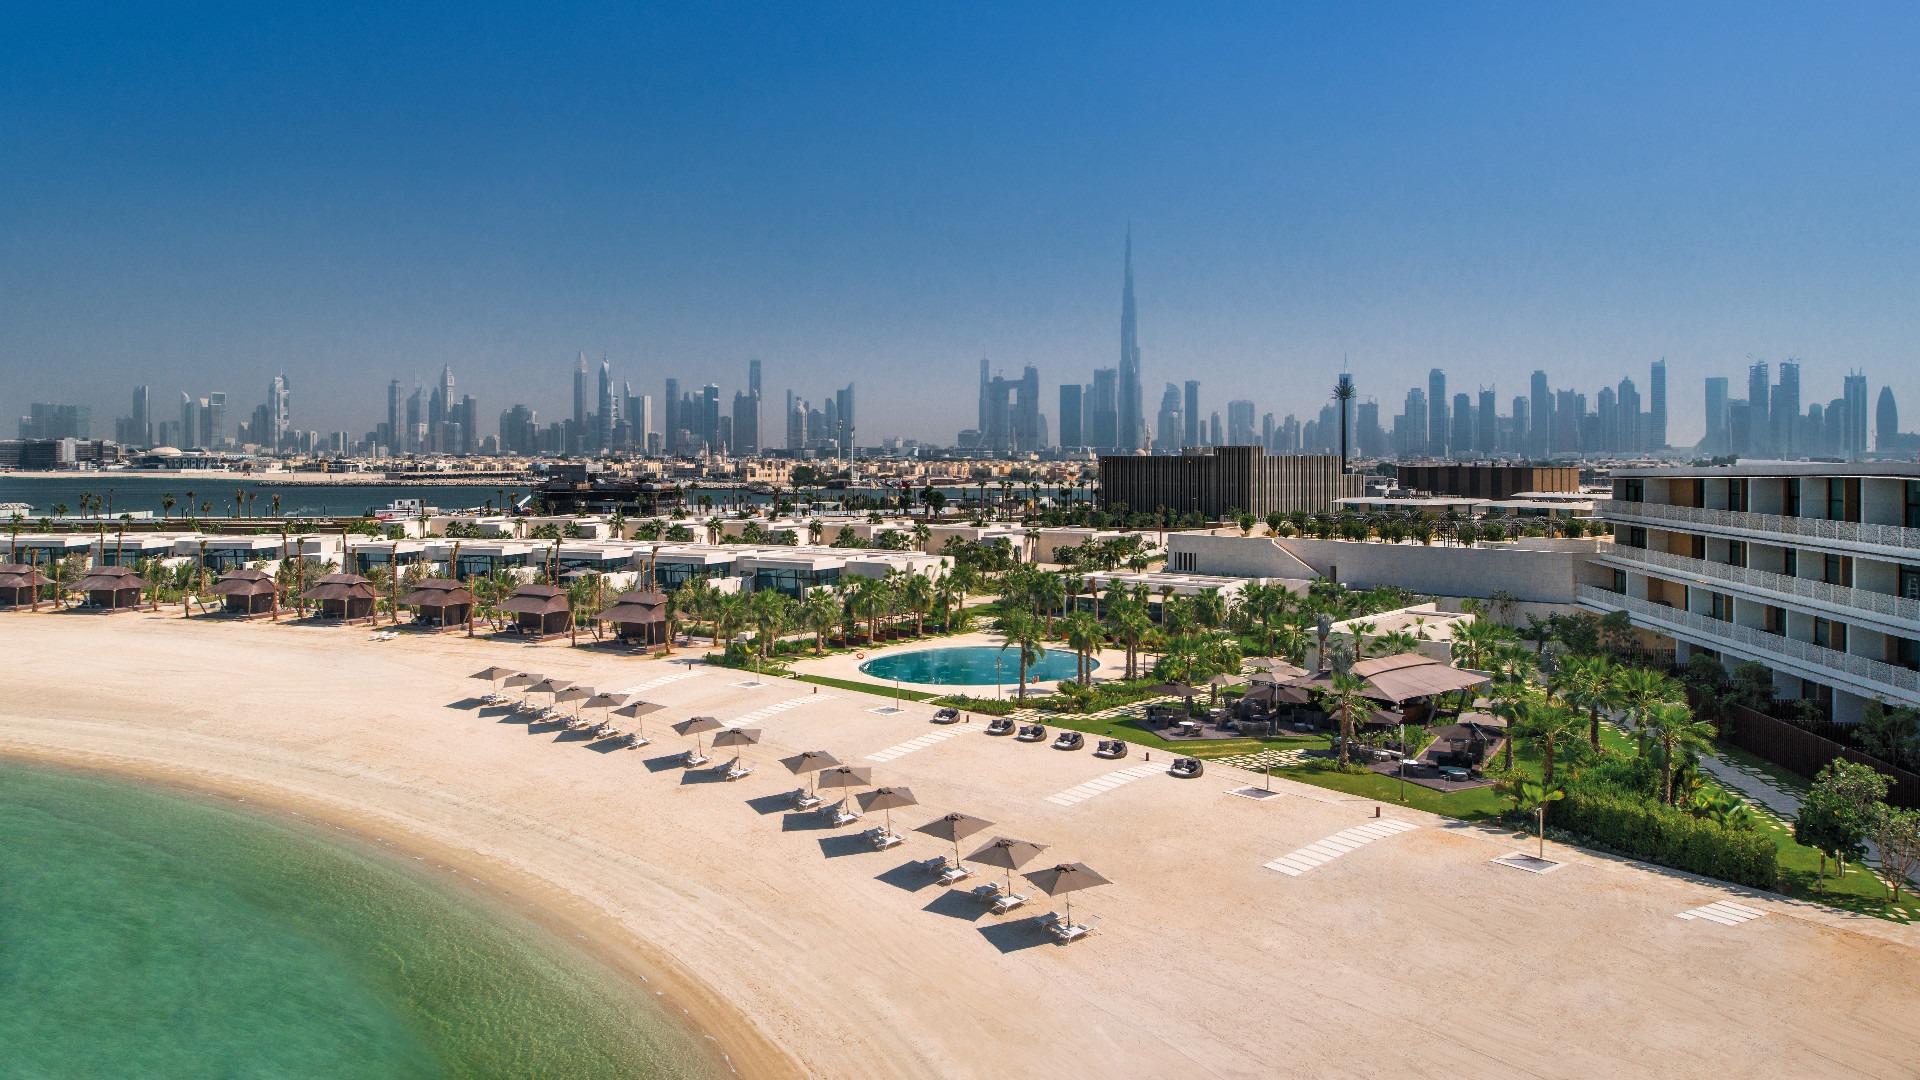 Bvlgari Resort Dubai